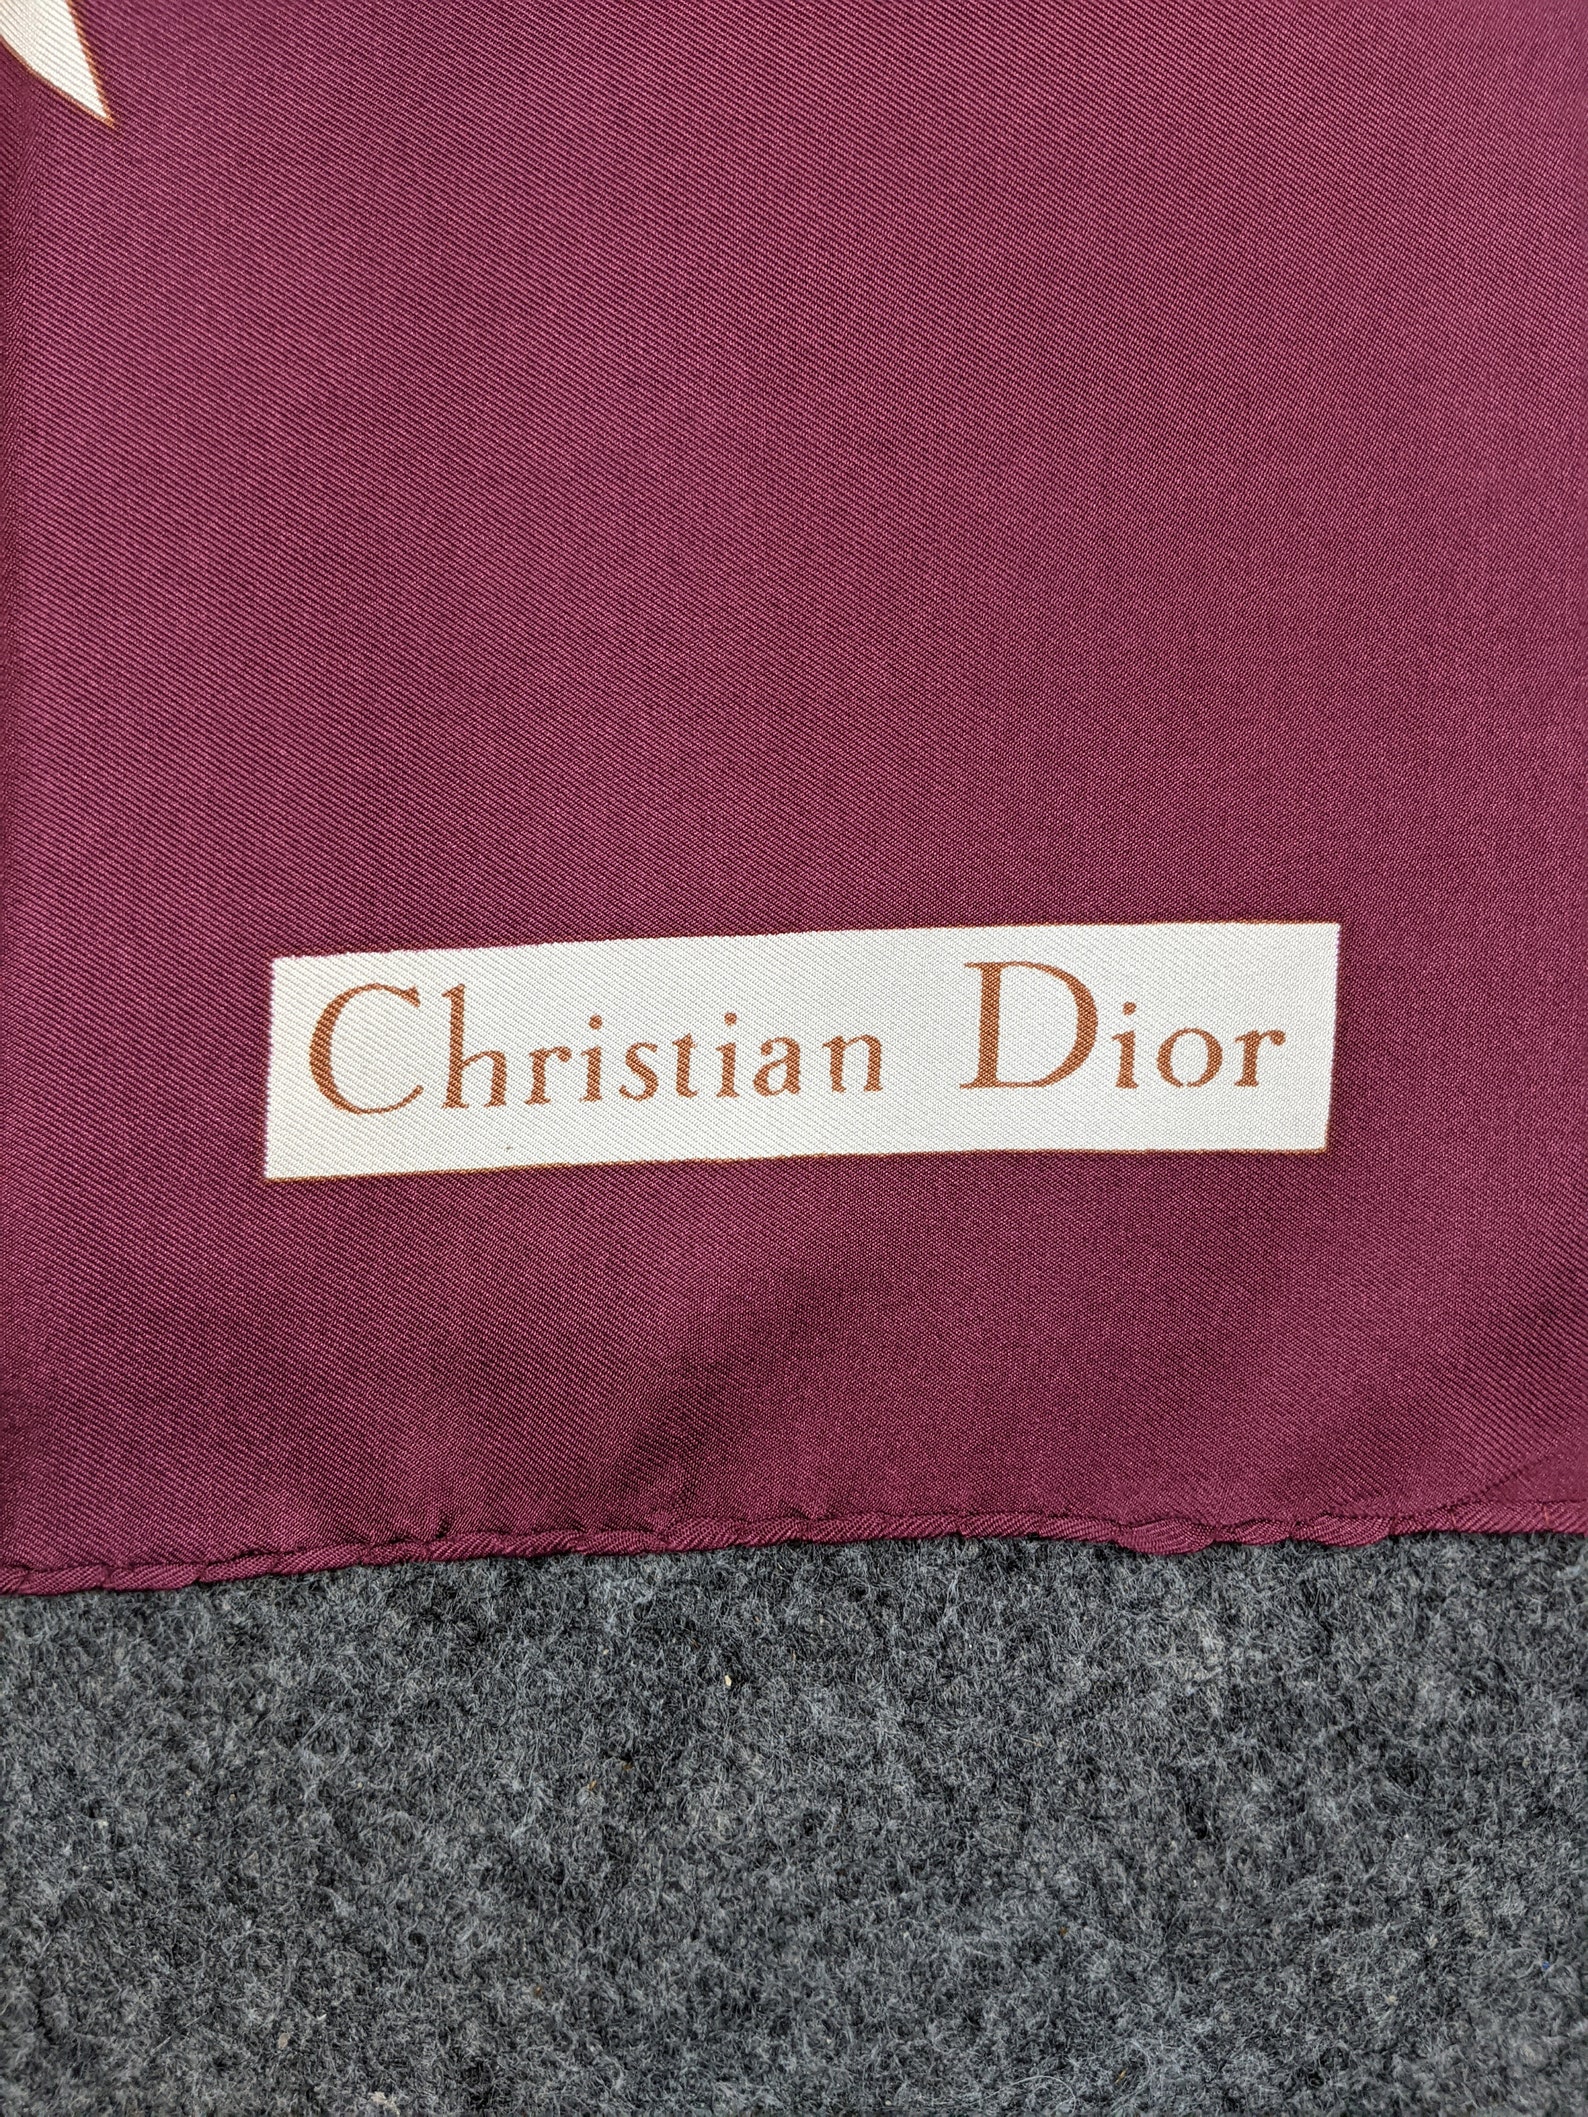 Christian Dior Word Silk Scarf - Etsy